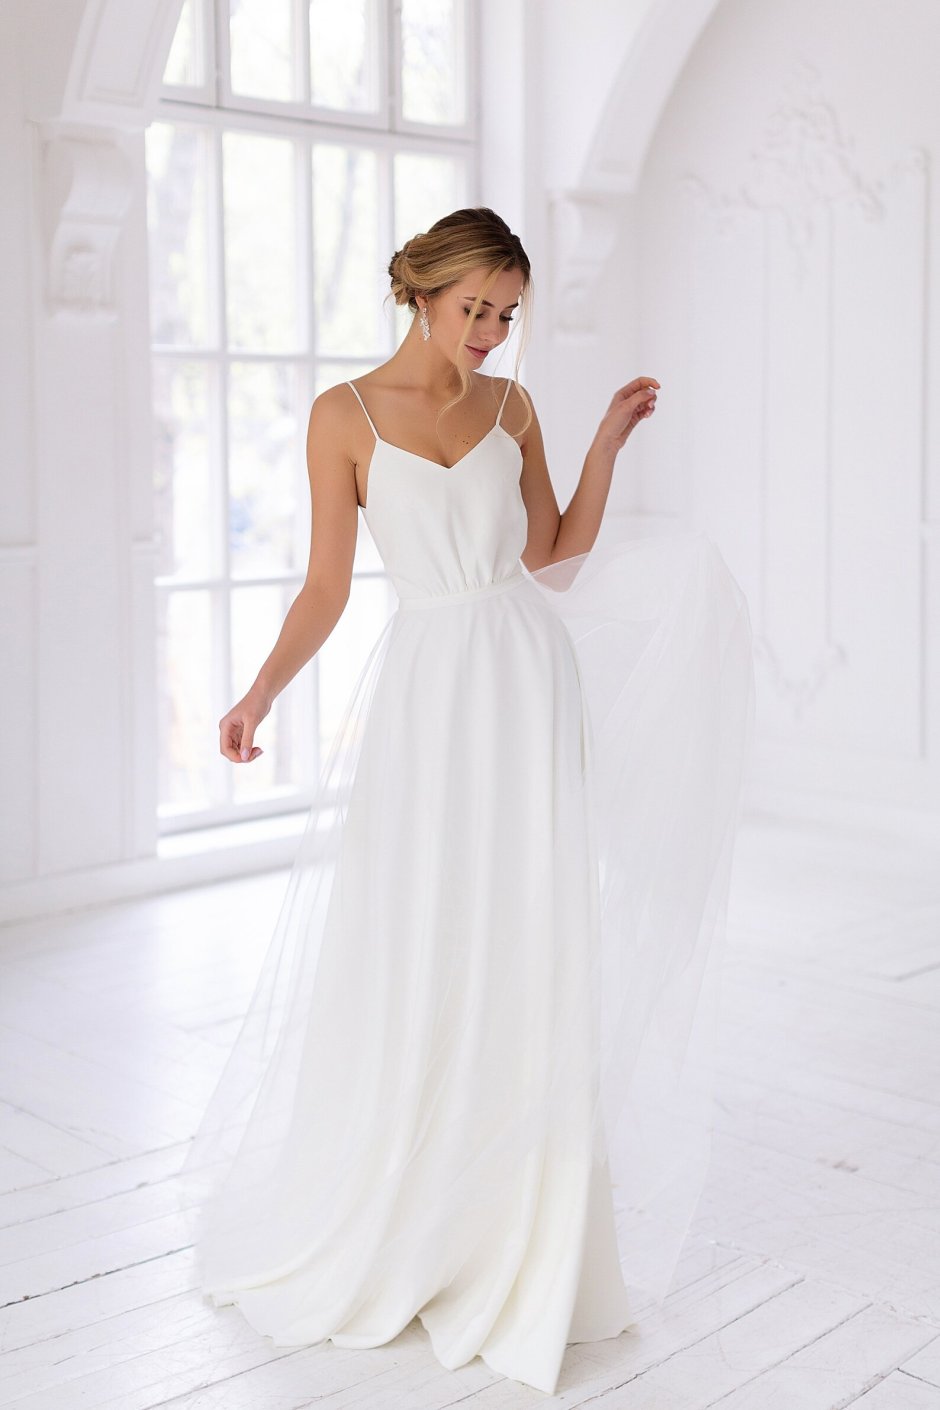 Белое платье в греческом стиле